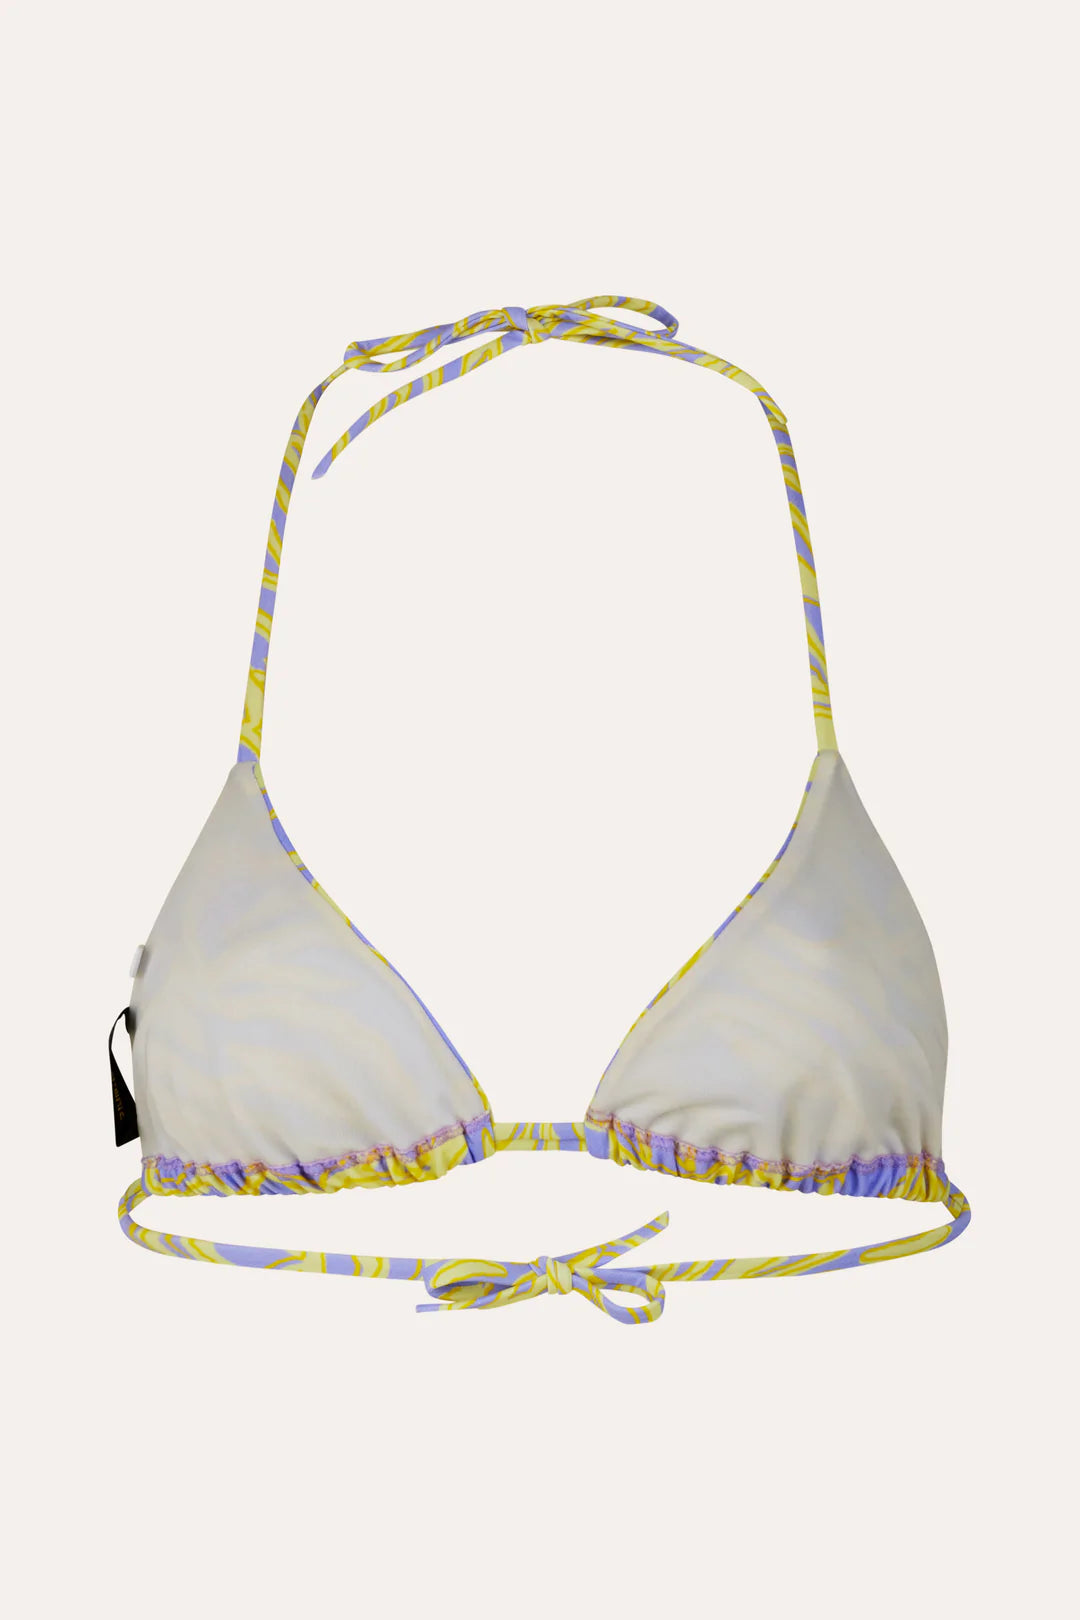 Stine Goya- Arum Bikini Top: Lilac/ Yellow